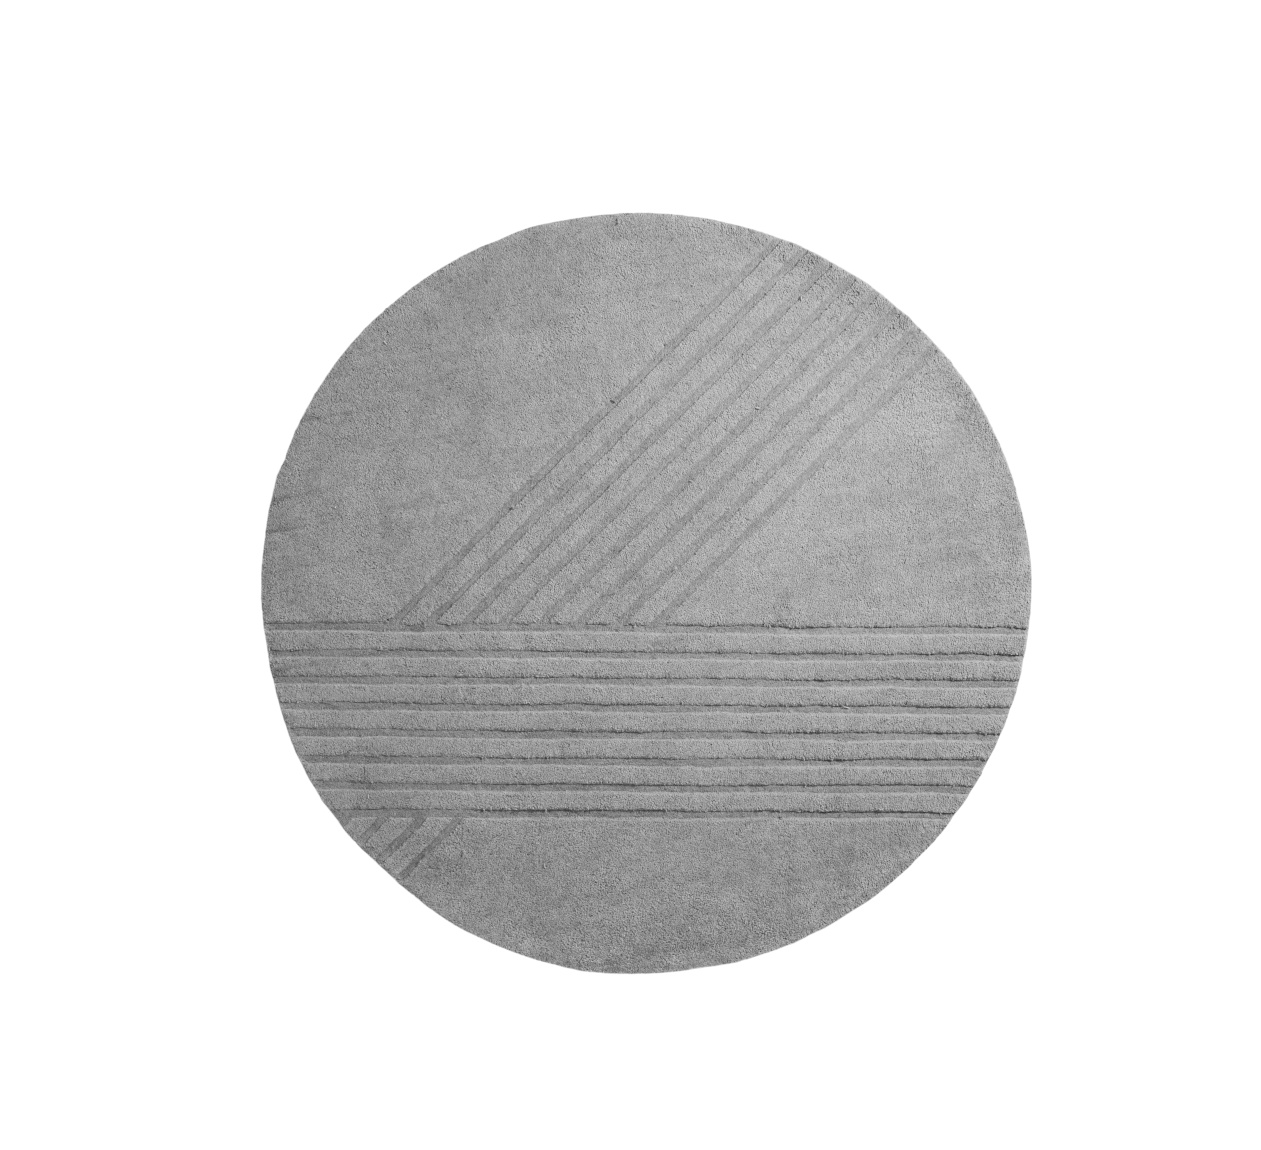 Kyoto Teppich, Ø 200 cm, grey